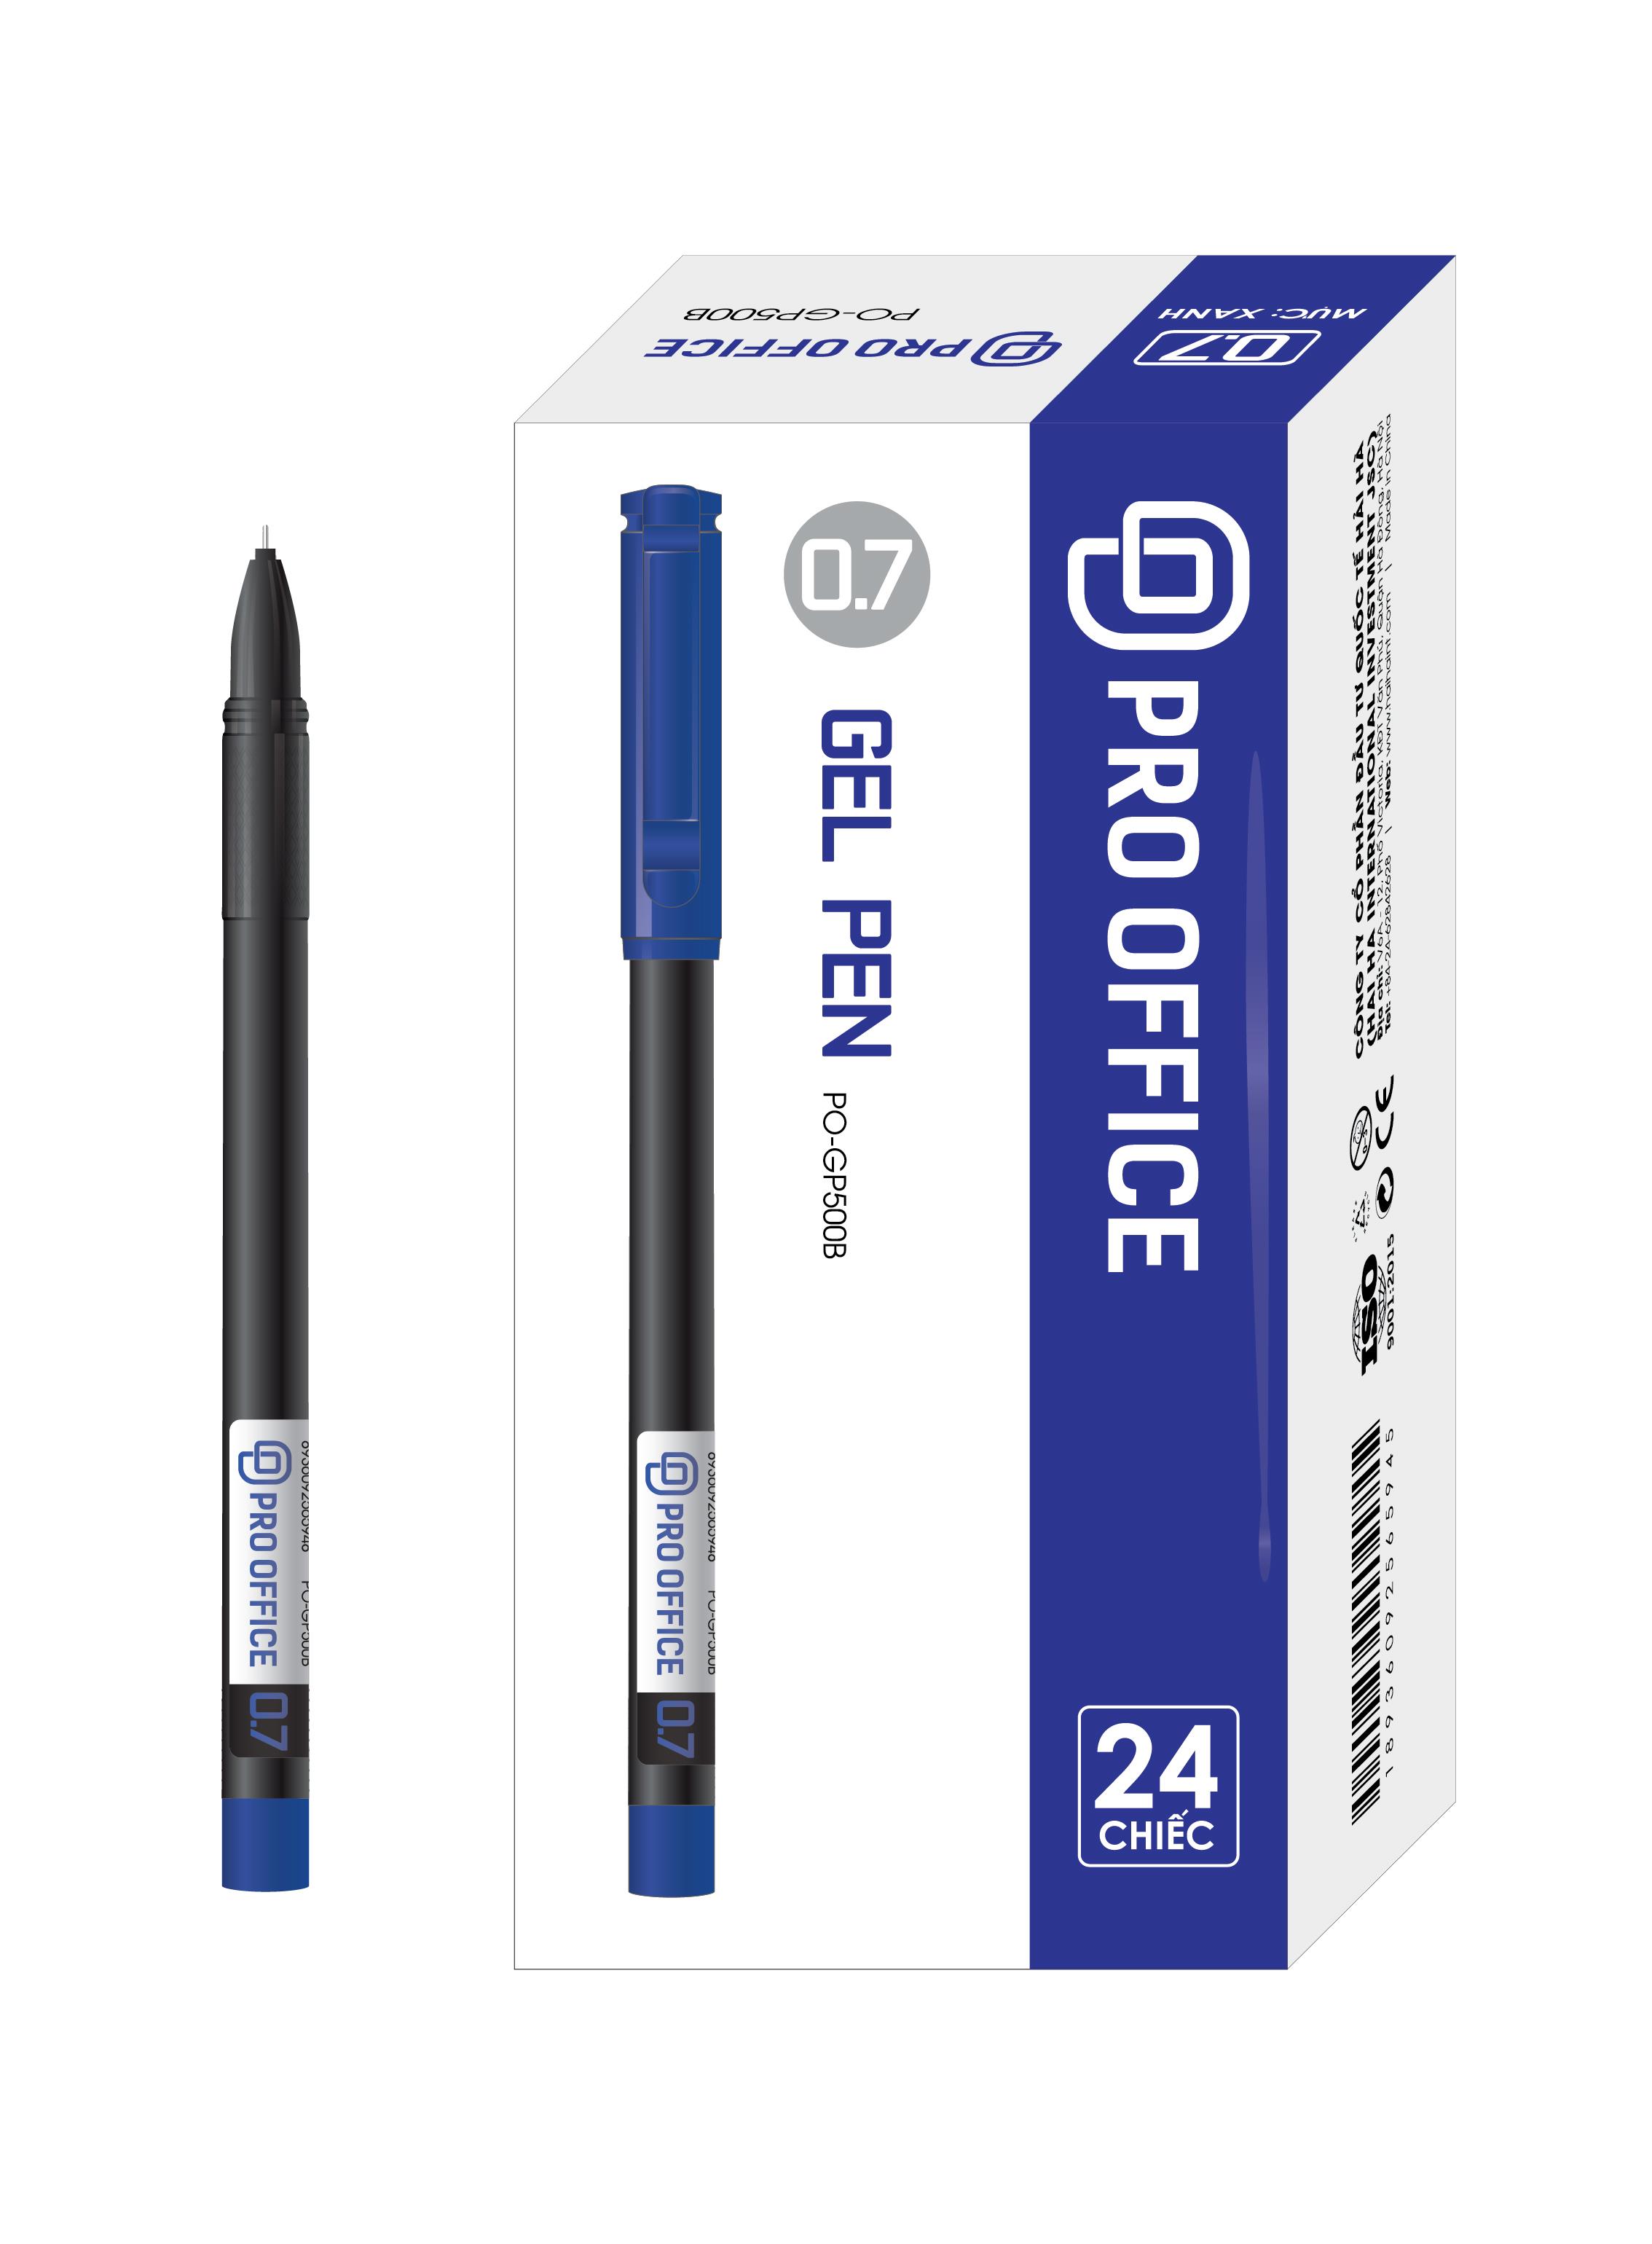 Bút gel 0.7 mực xanh (PO-GP500B)